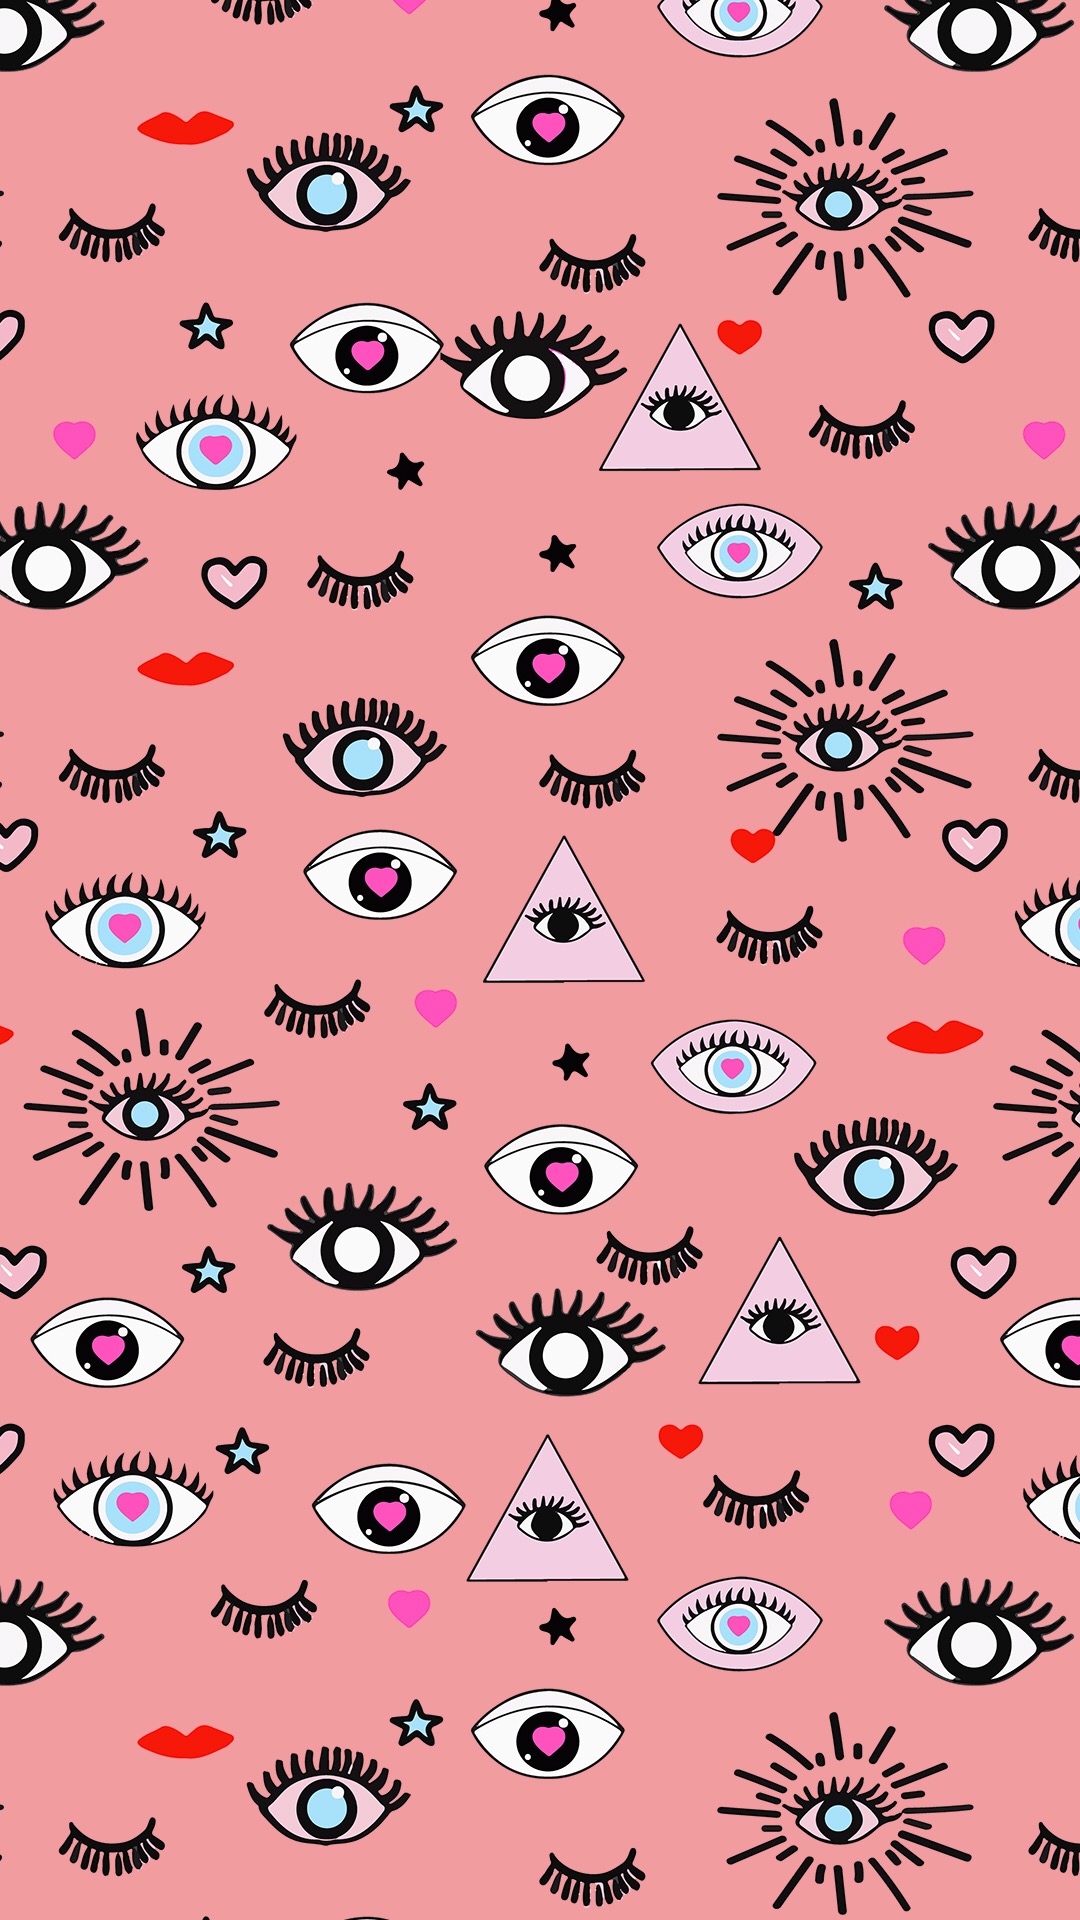 创意个性眼睛手机壁纸 个性创意手机壁纸(6)